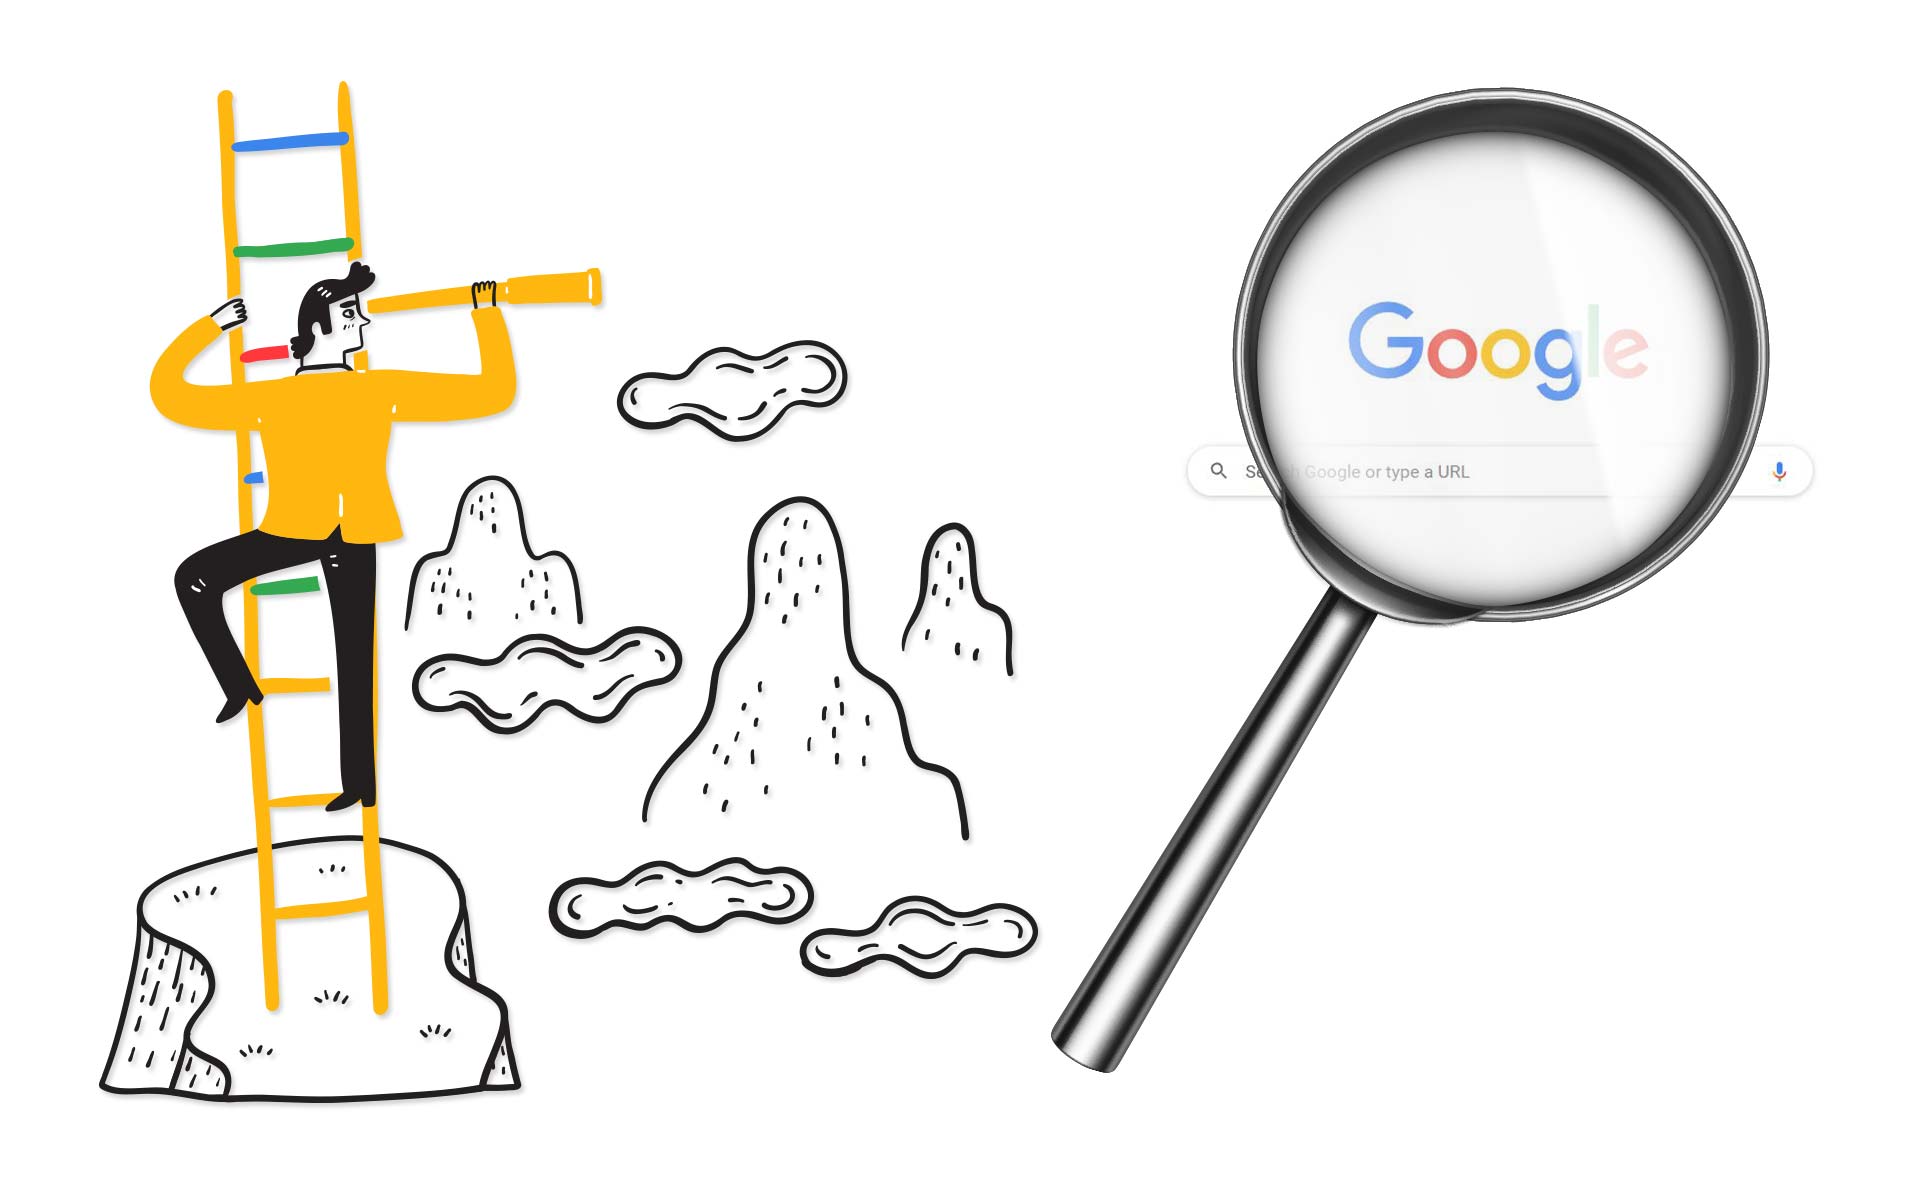 Ilustracija Google pretrage pod lupom i muškarca koji se penje na merdevine google-ovih boja i gleda u monokular.